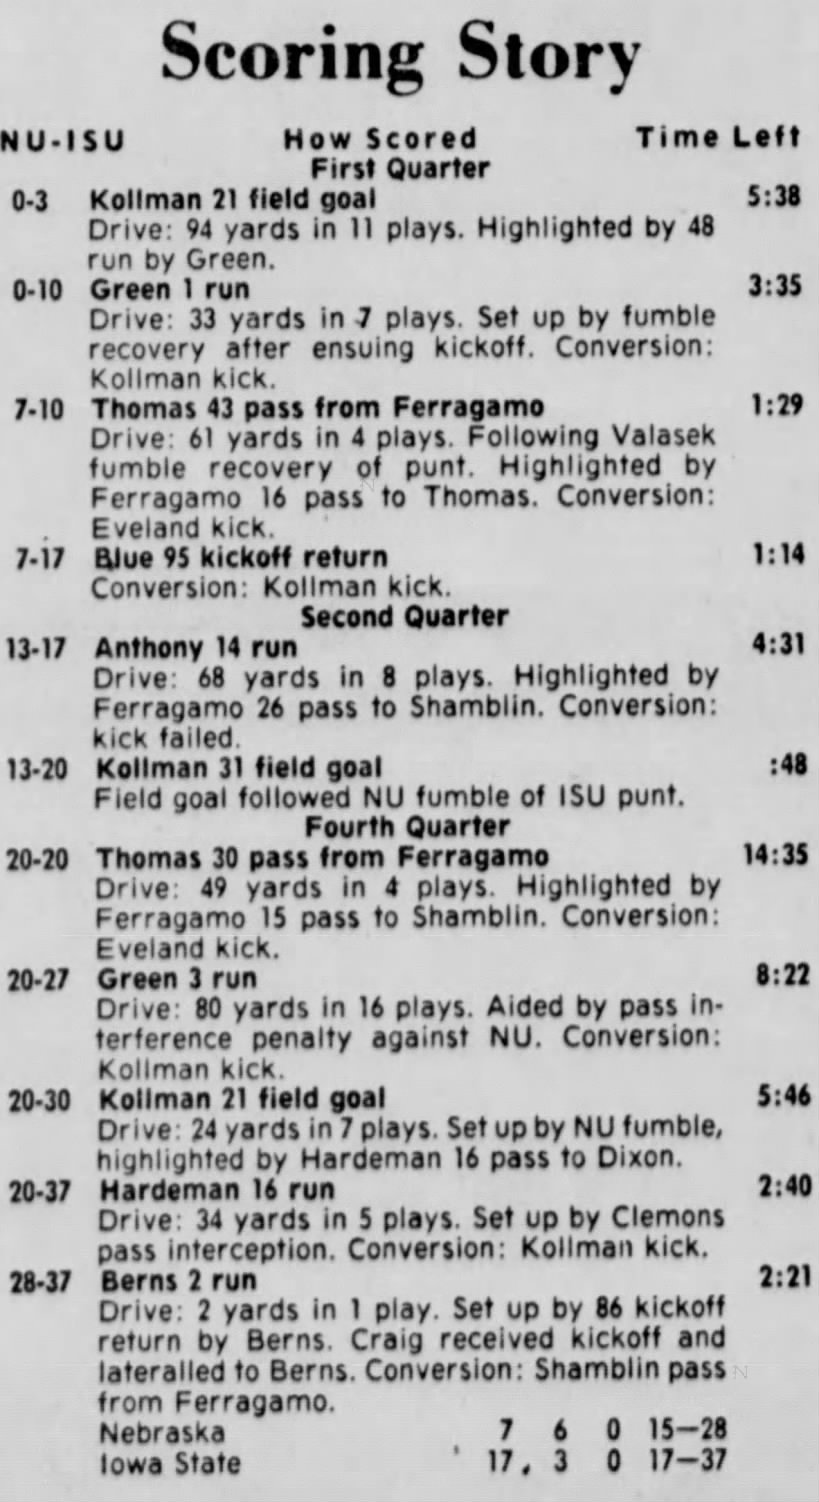 1976 Nebraska-Iowa State scoring summary